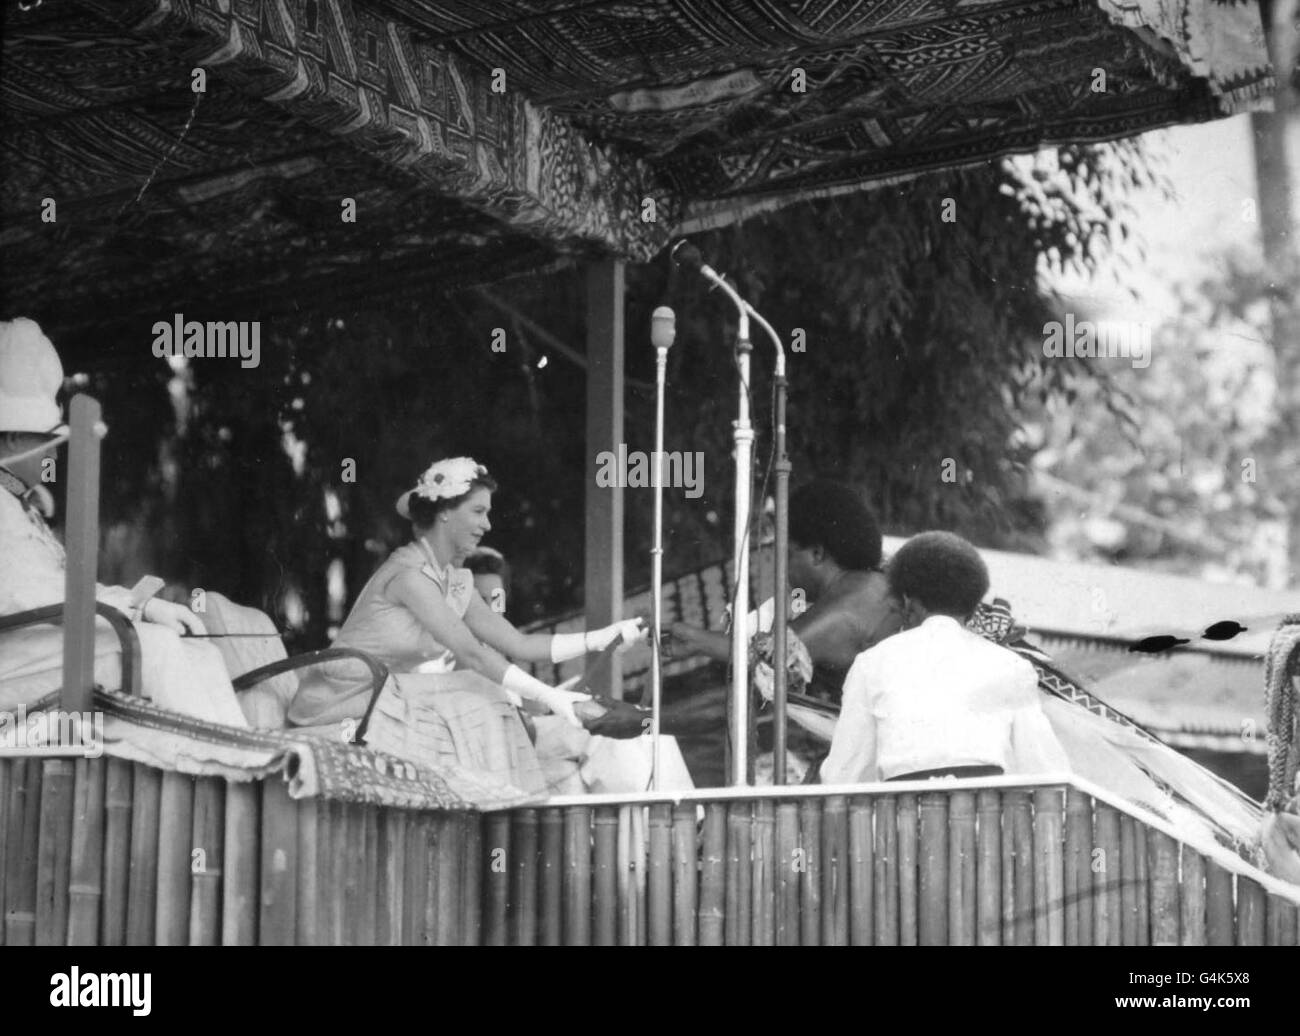 Un capo nativo accoglie la Regina alle Fiji e le presenta un regalo di denti di balena sospesi da corde di fibra di cocco, gli articoli più pregiati nell'uso cerimoniale delle Fiji. Foto Stock